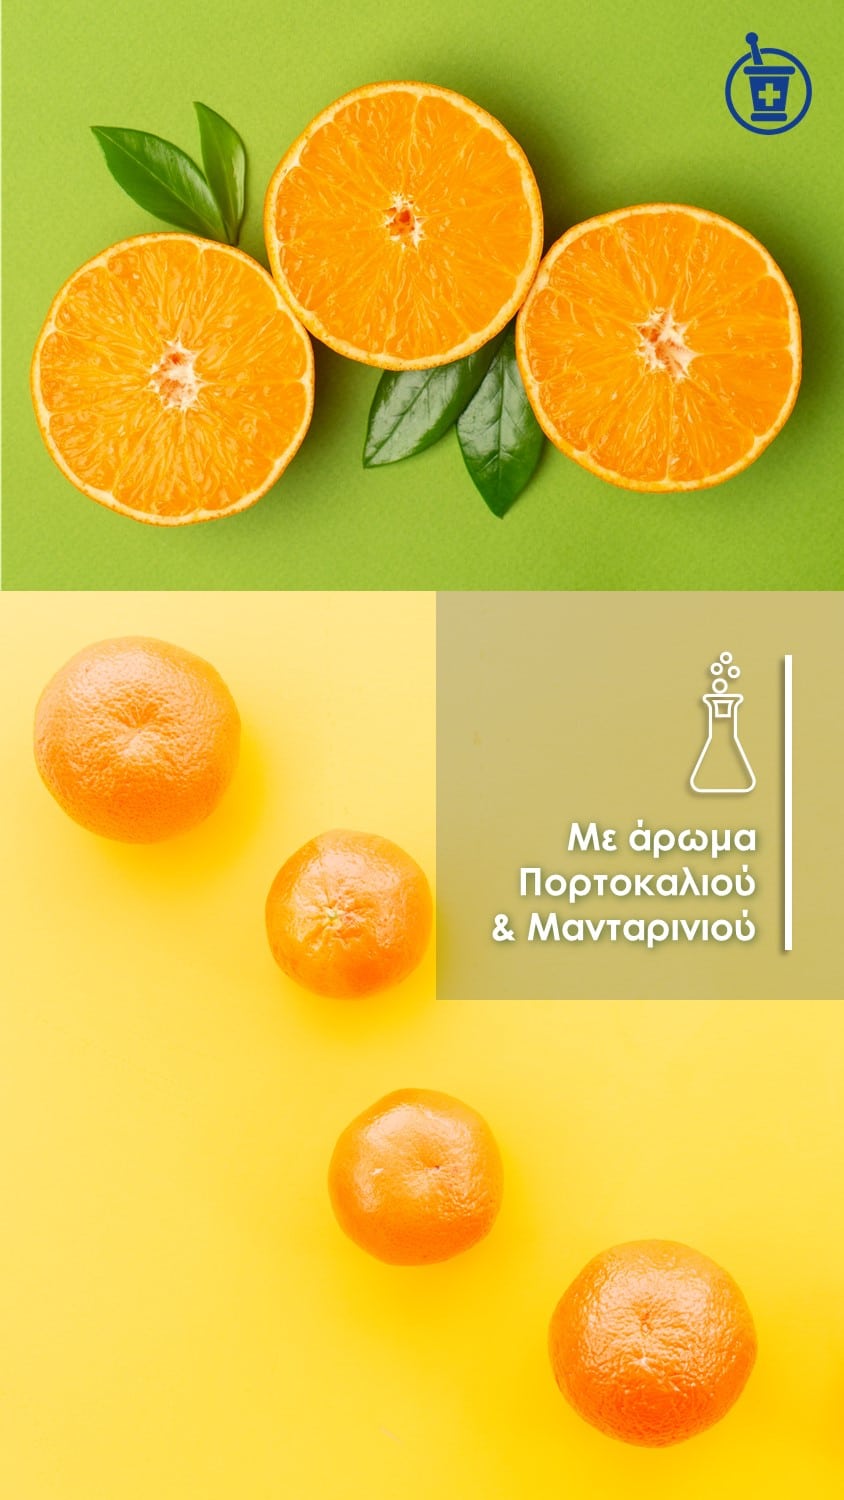 Με άρωμα πορτοκαλιού & μανταρινιού